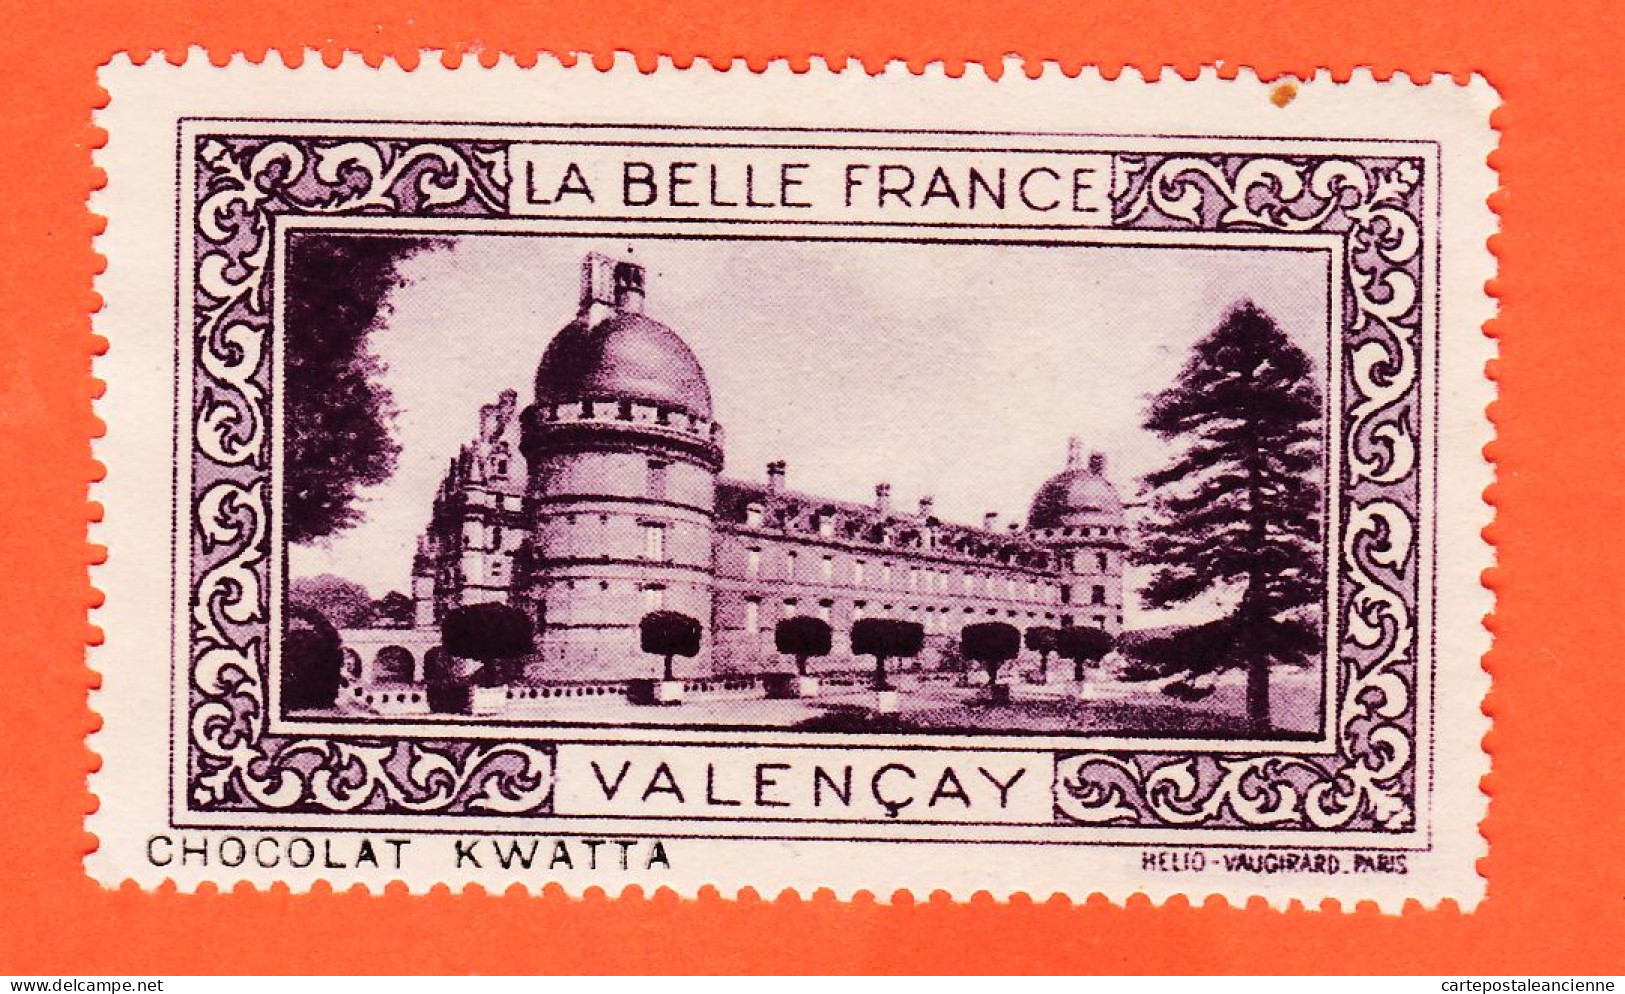 13024 / ⭐ ◉ VALENCAY 36-Indre Chateau Pub Chocolat KWATTA Vignette Collection LA BELLE FRANCE HELIO-VAUGIRARD - Tourism (Labels)